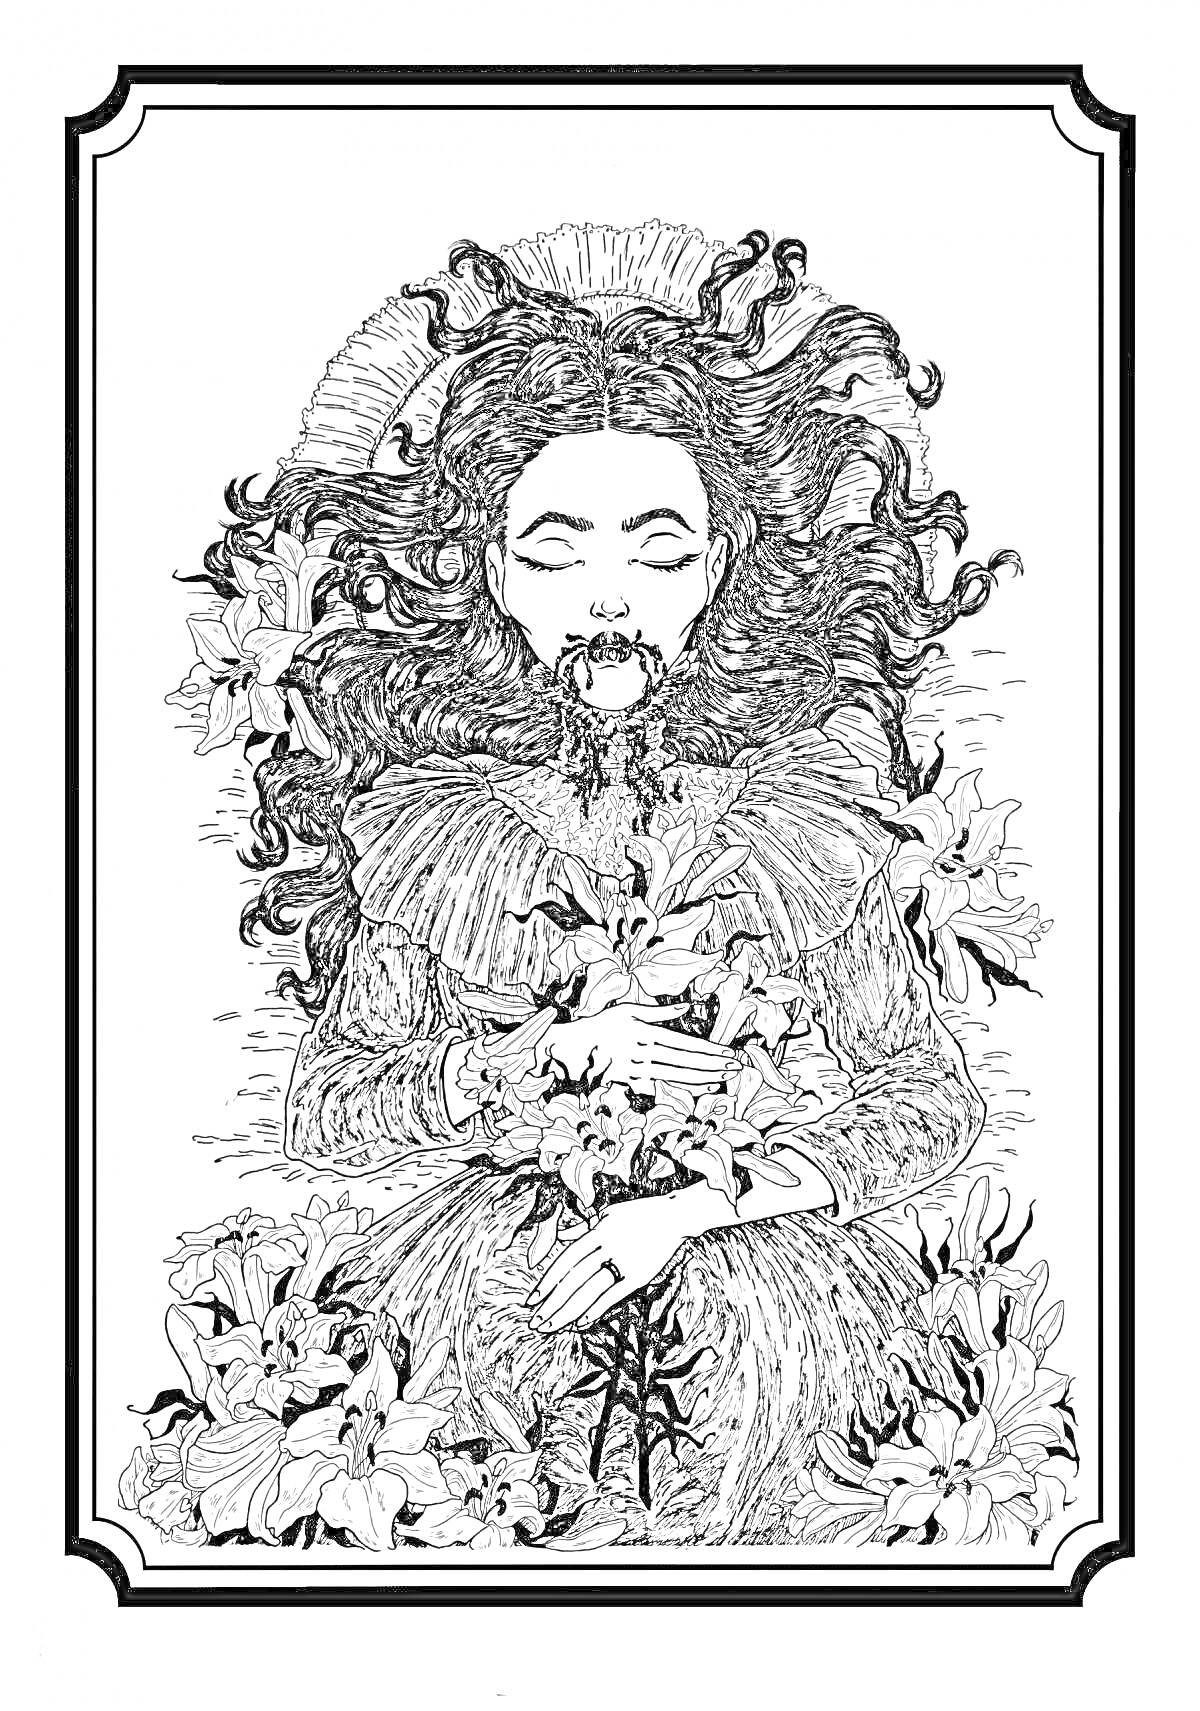 Женщина в траурном одеянии, лежащая в окружении лилий